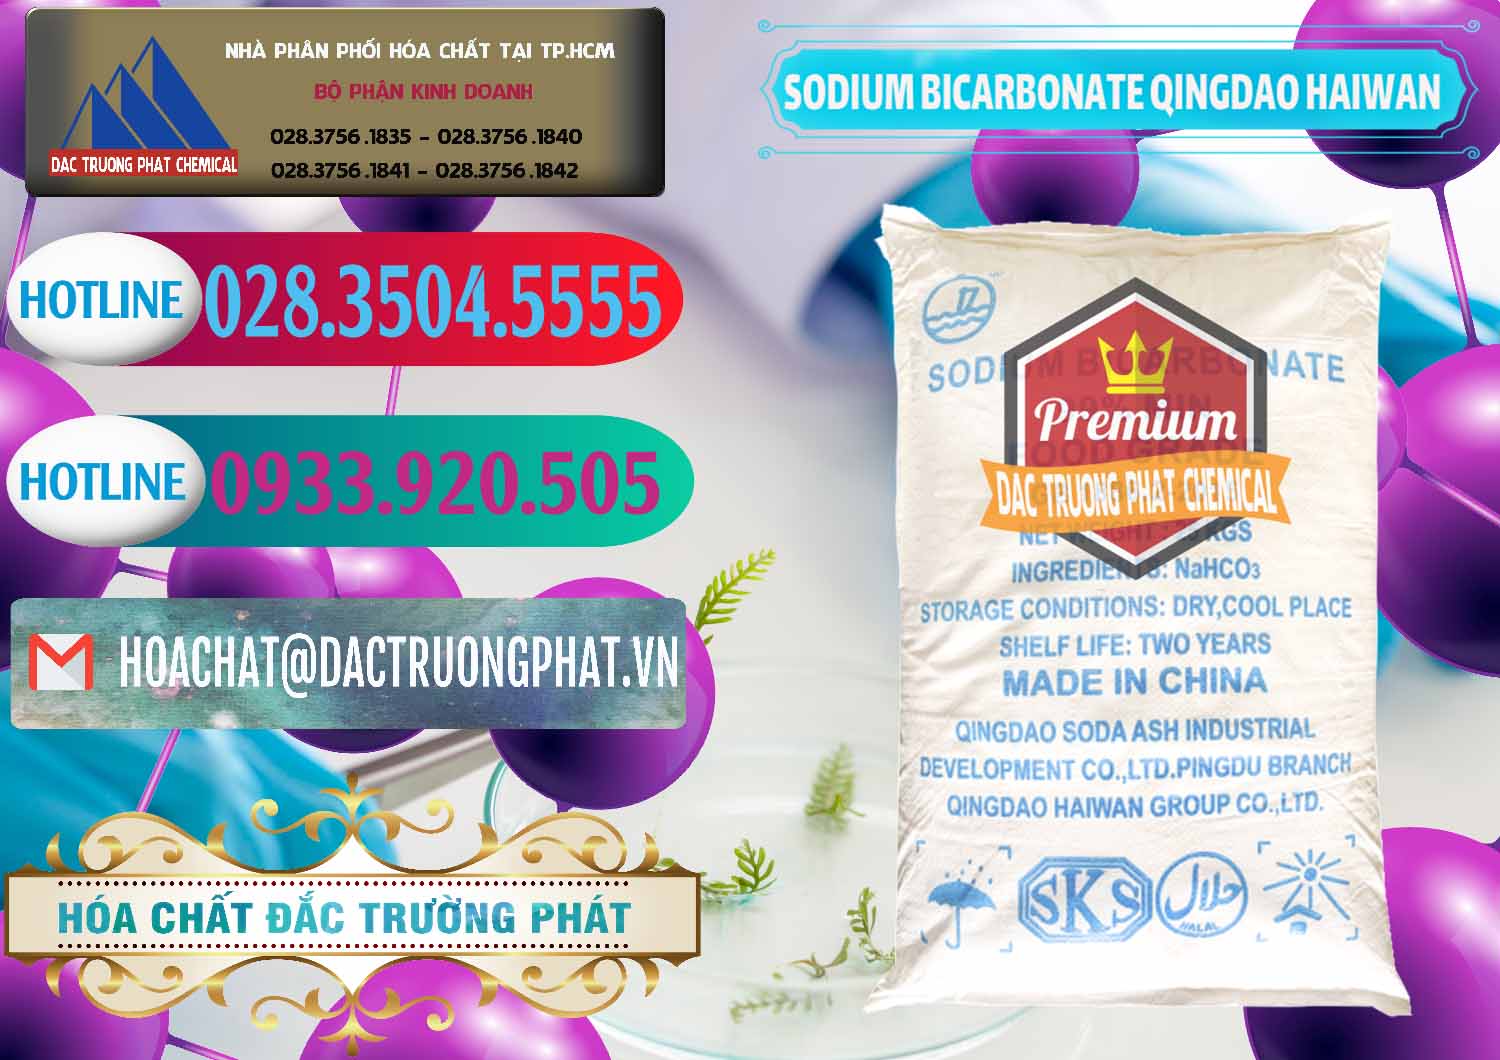 Cty chuyên cung cấp và bán Sodium Bicarbonate – Bicar NaHCO3 Food Grade Qingdao Haiwan Trung Quốc China - 0258 - Nơi chuyên nhập khẩu - phân phối hóa chất tại TP.HCM - truongphat.vn